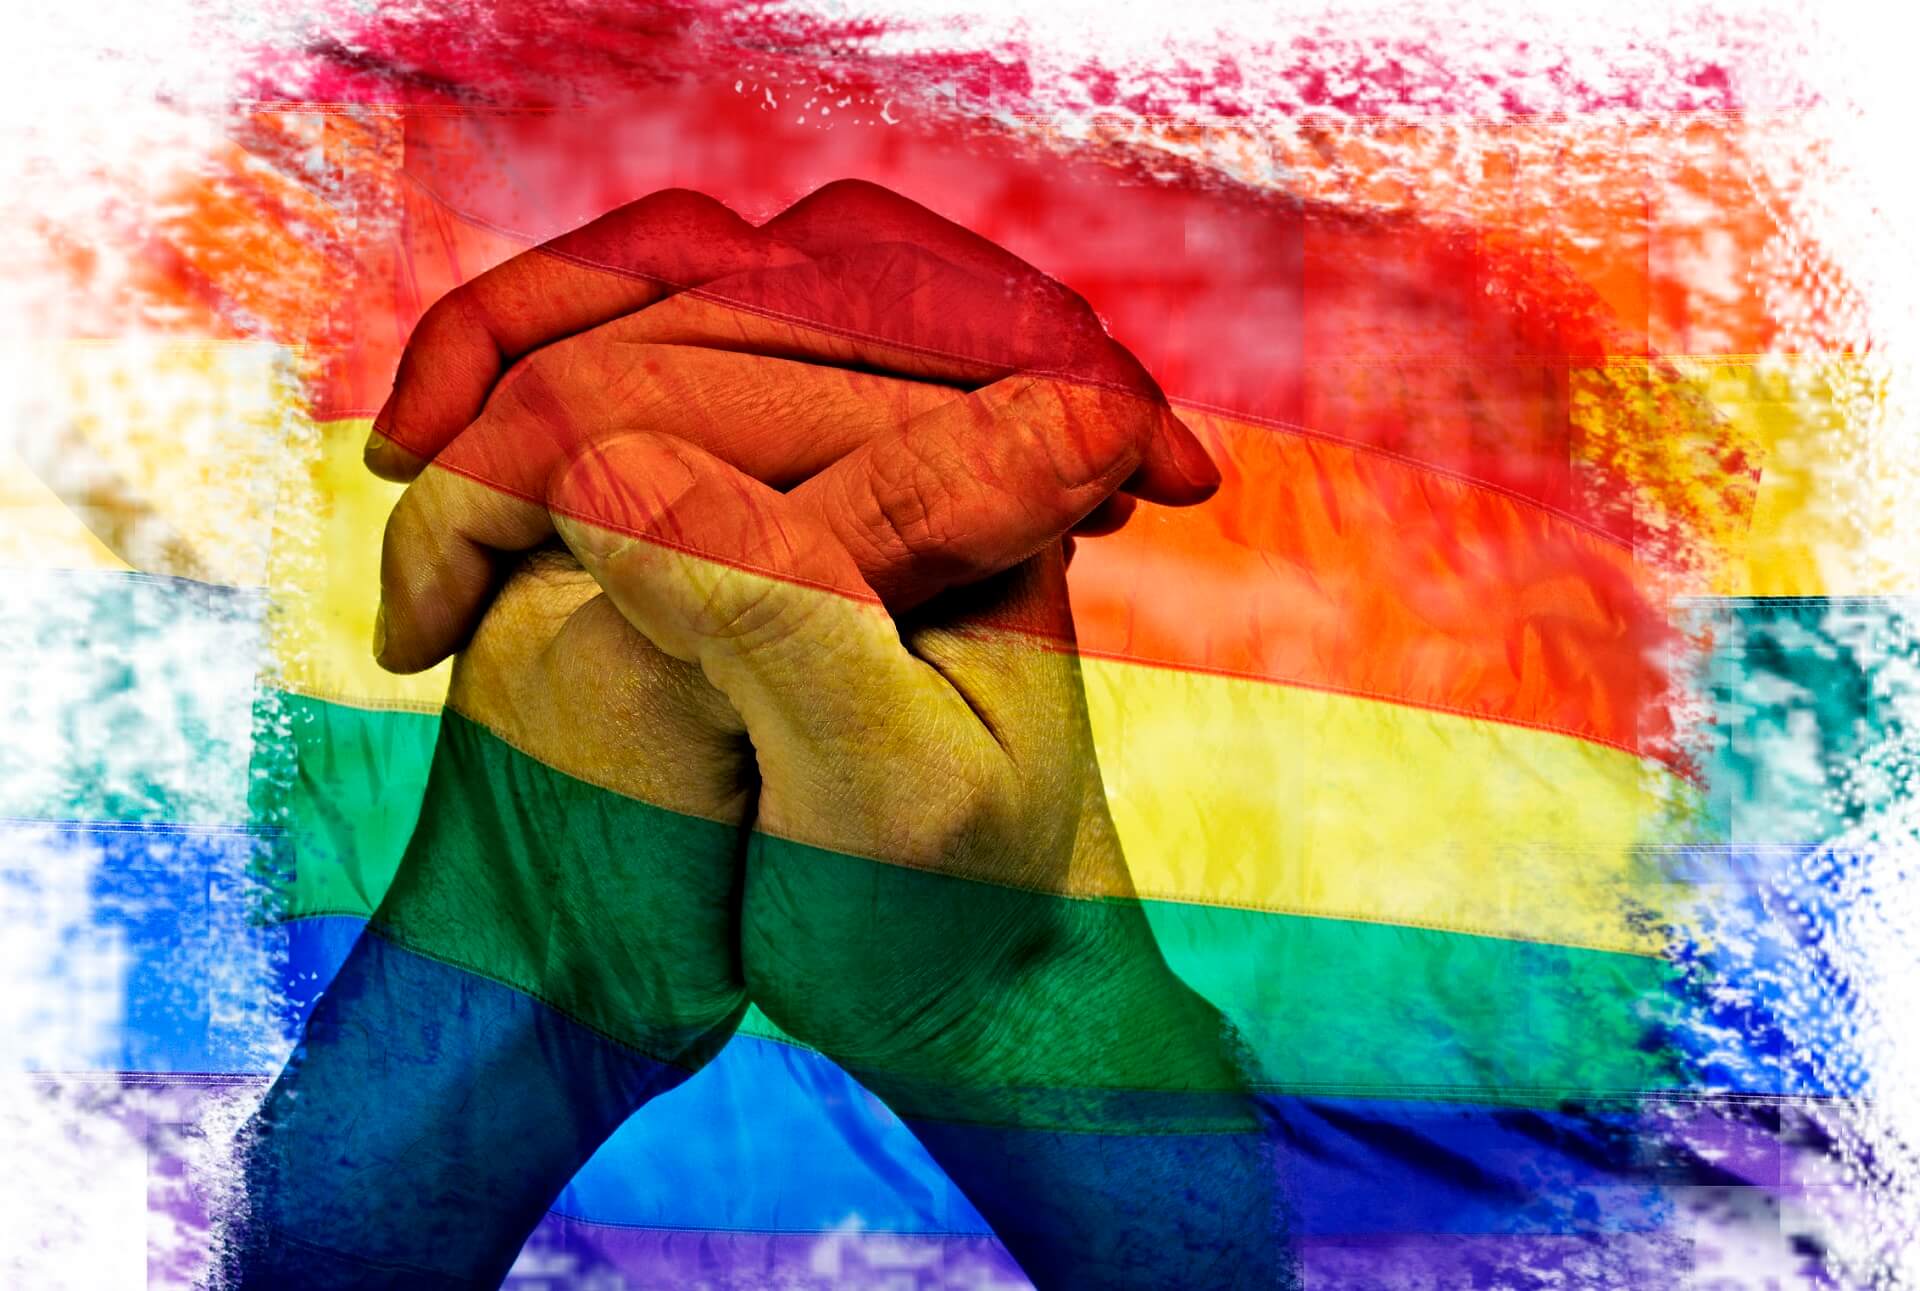 WOJEWODA LUBELSKI NAGRADZA ZA WALKĘ Z IDEOLOGIĄ LGBT